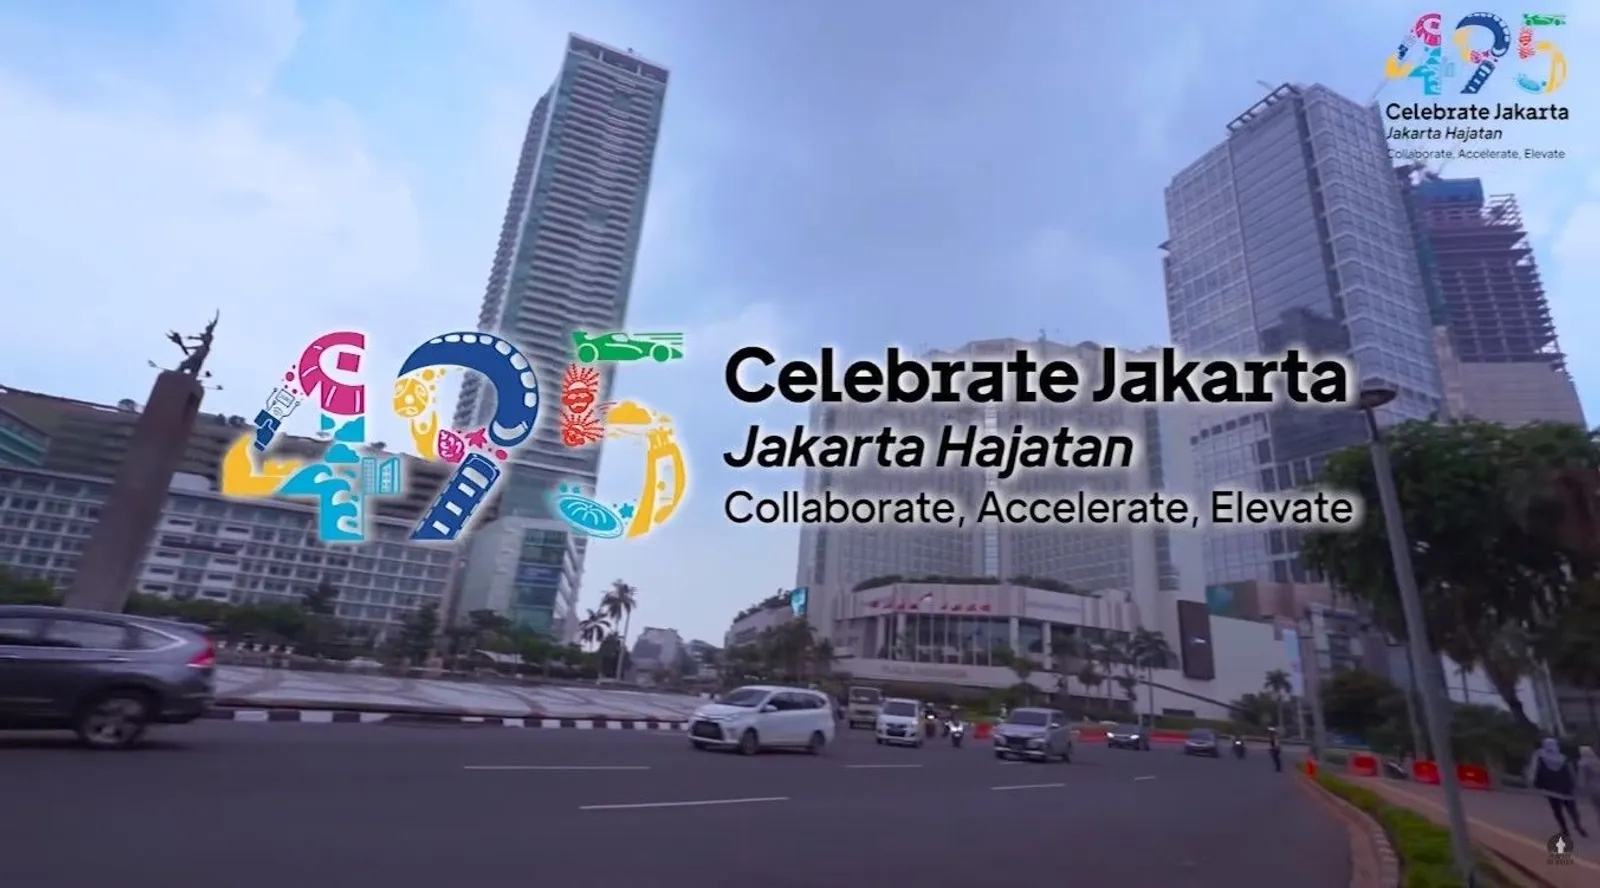 17 Deretan Promo HUT DKI Jakarta ke-495, Diskon Melimpah